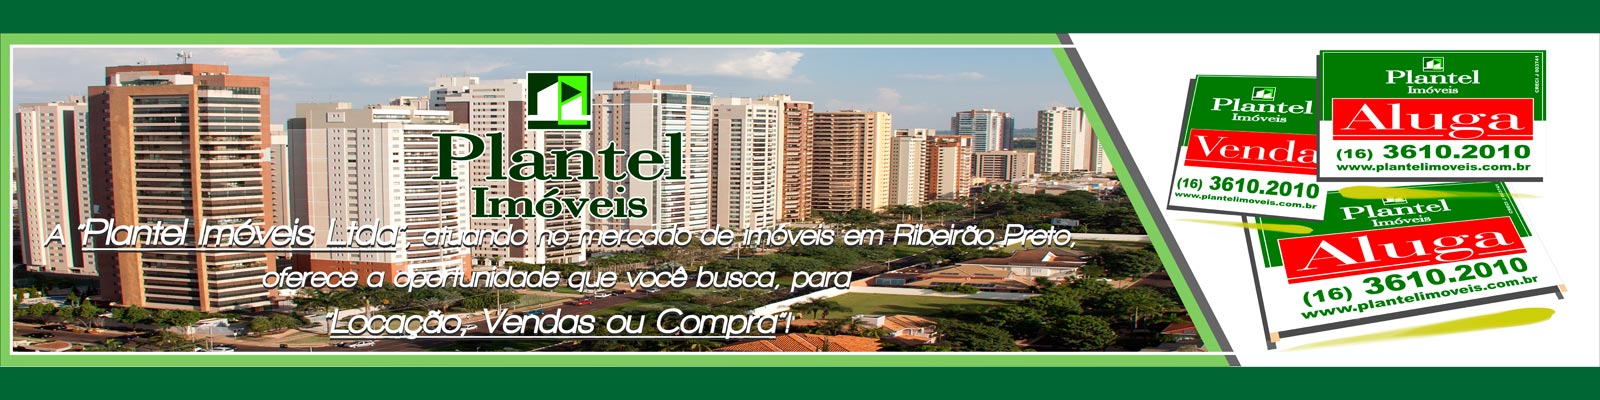 Imobiliária Ribeirão Preto - Plantel Imóveis - Locação, Vendas ou Compra